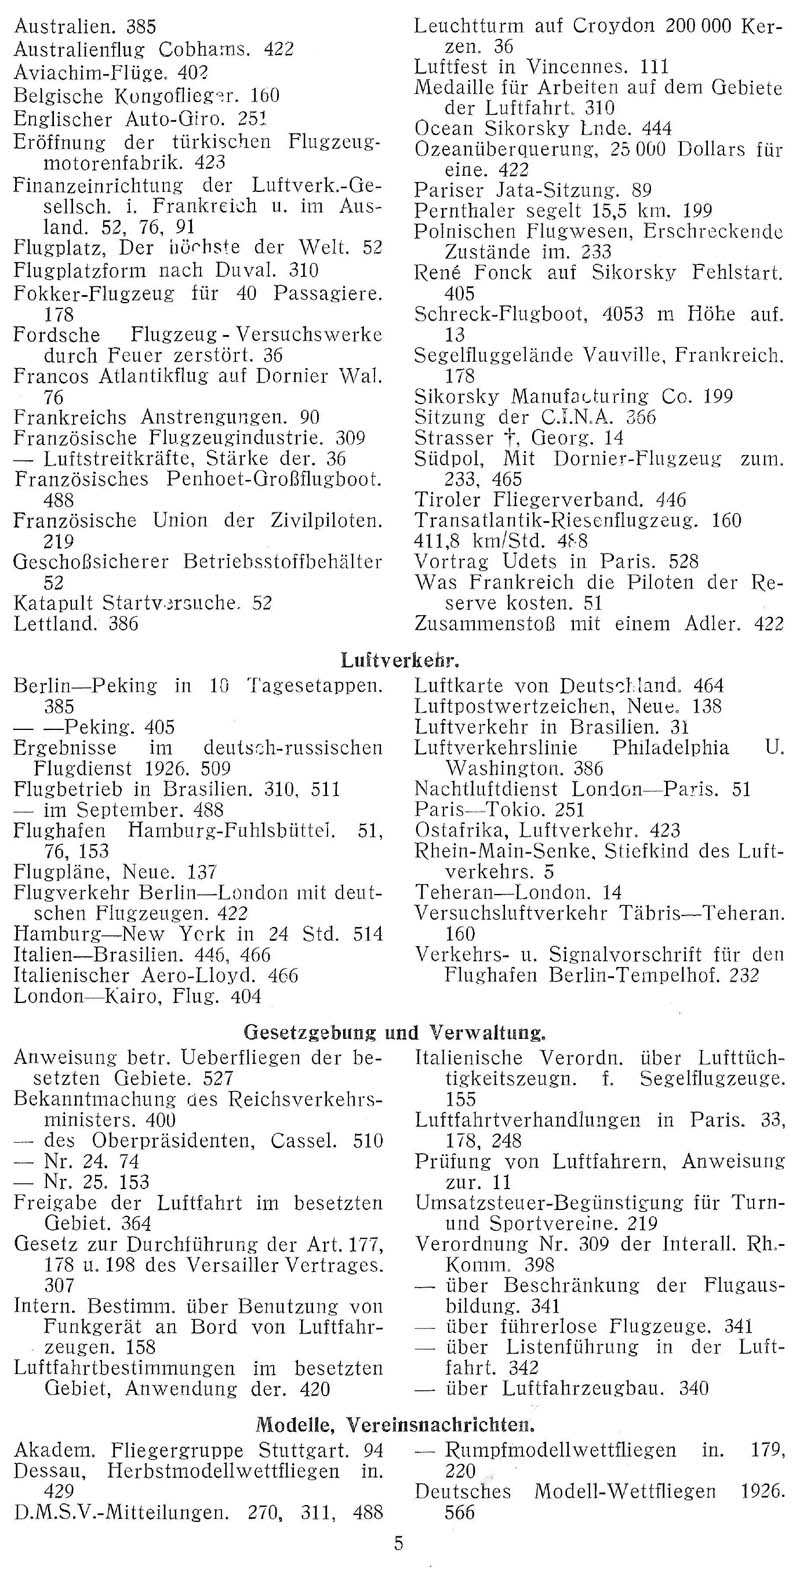 Sachregister und Inhaltsverzeichnis der Zeitschrift Flugsport für das Jahr 1926